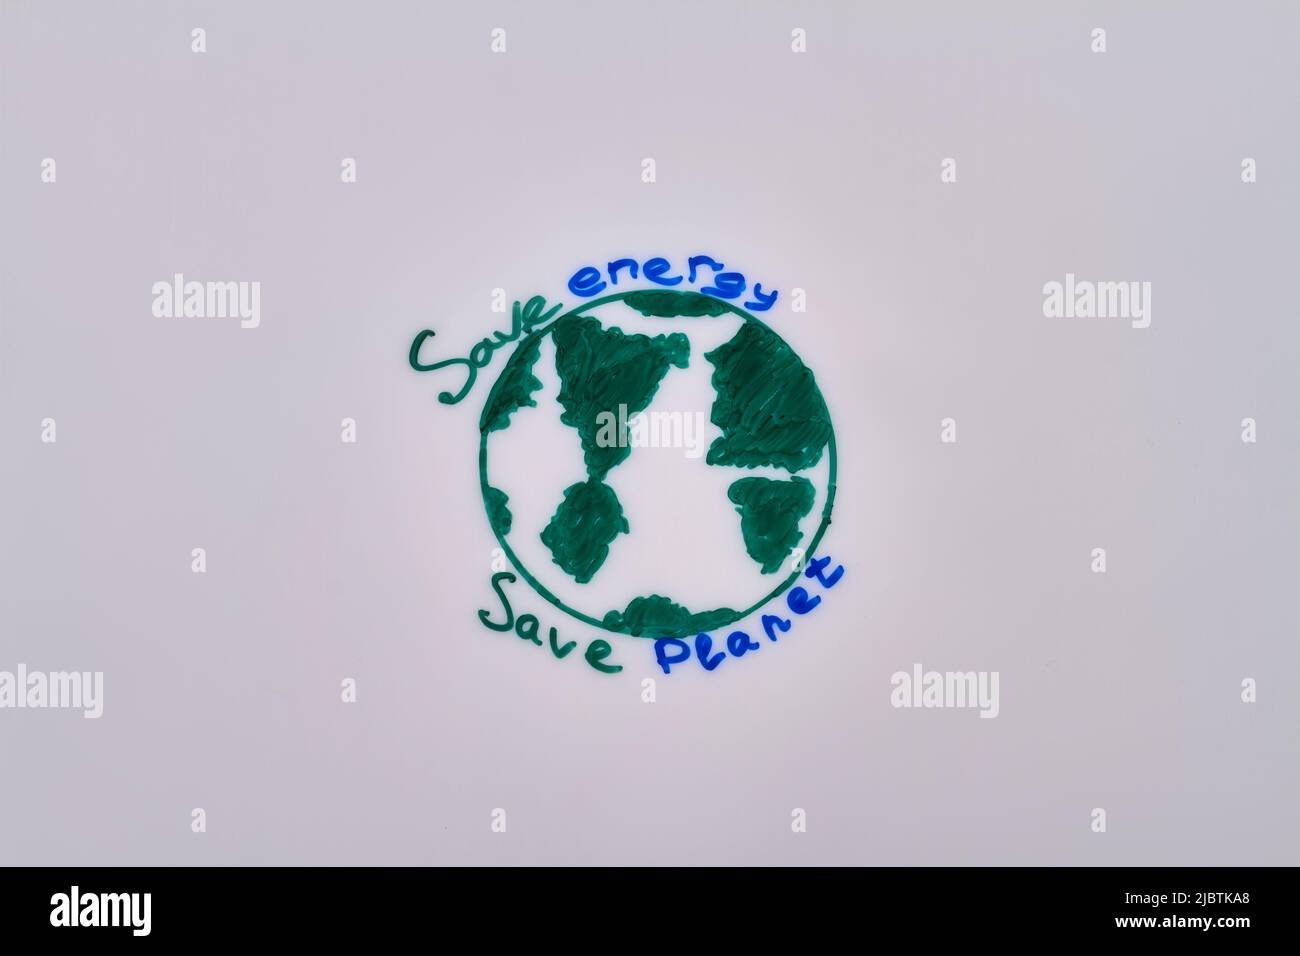 Ahorre energía y ahorre planeta. Dibujo de planeta verde. Ilustración y eslogan de la Tierra. Foto de stock